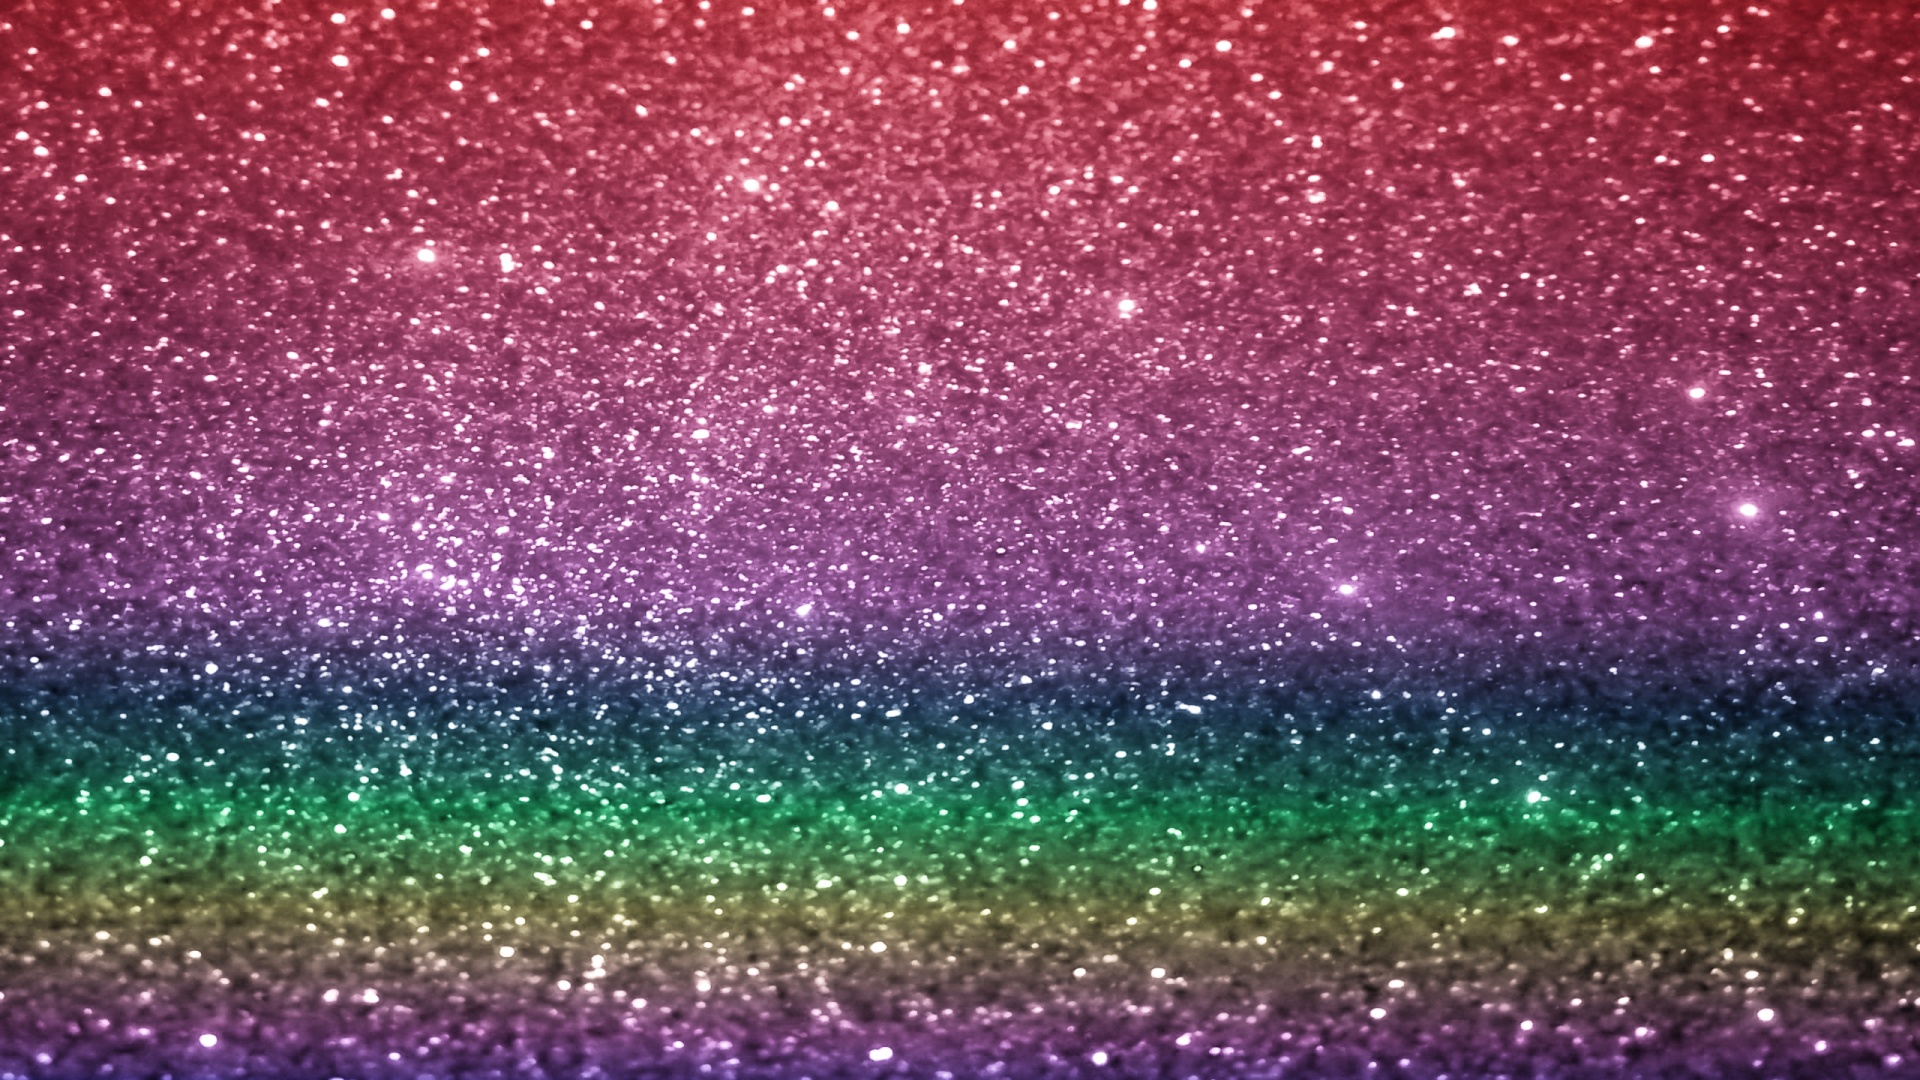 Rainbow Glitter